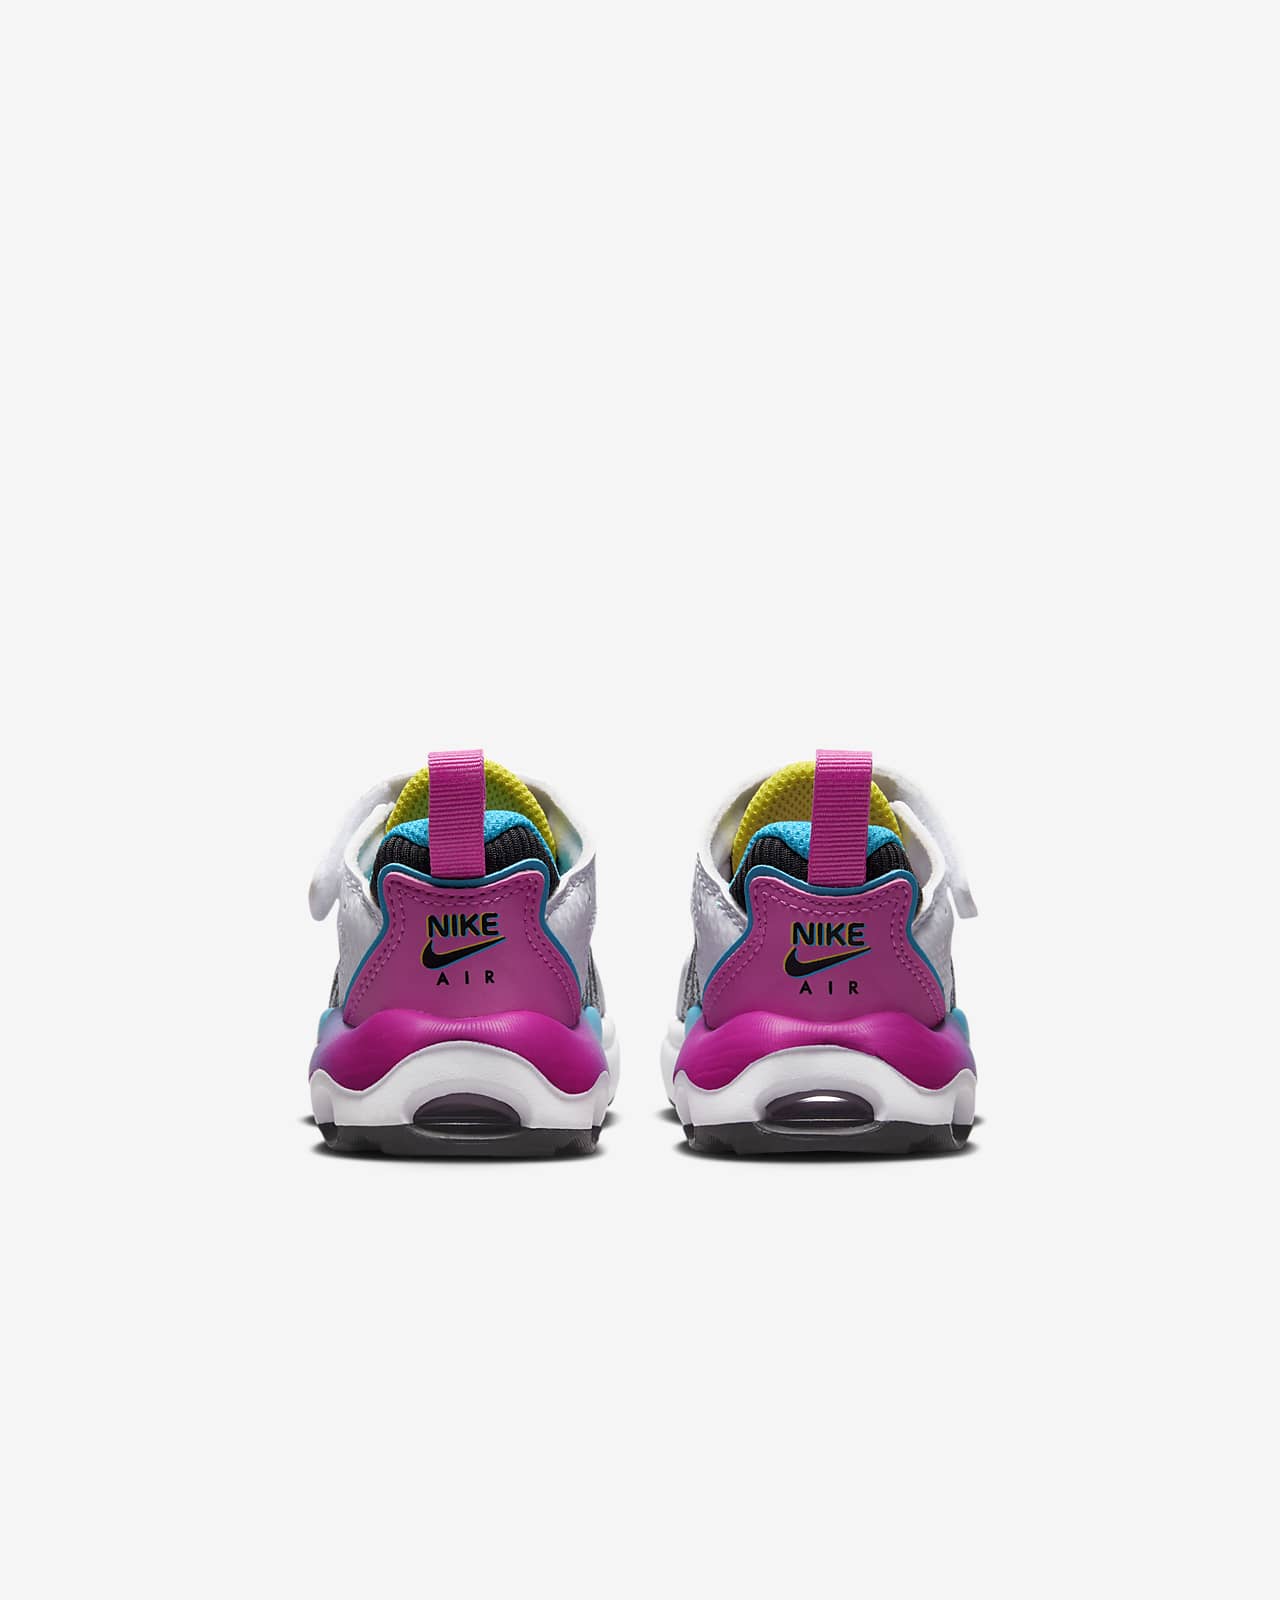 vloeistof Flikkeren Begunstigde Nike Air Max TW SE Baby/Toddler Shoes. Nike.com